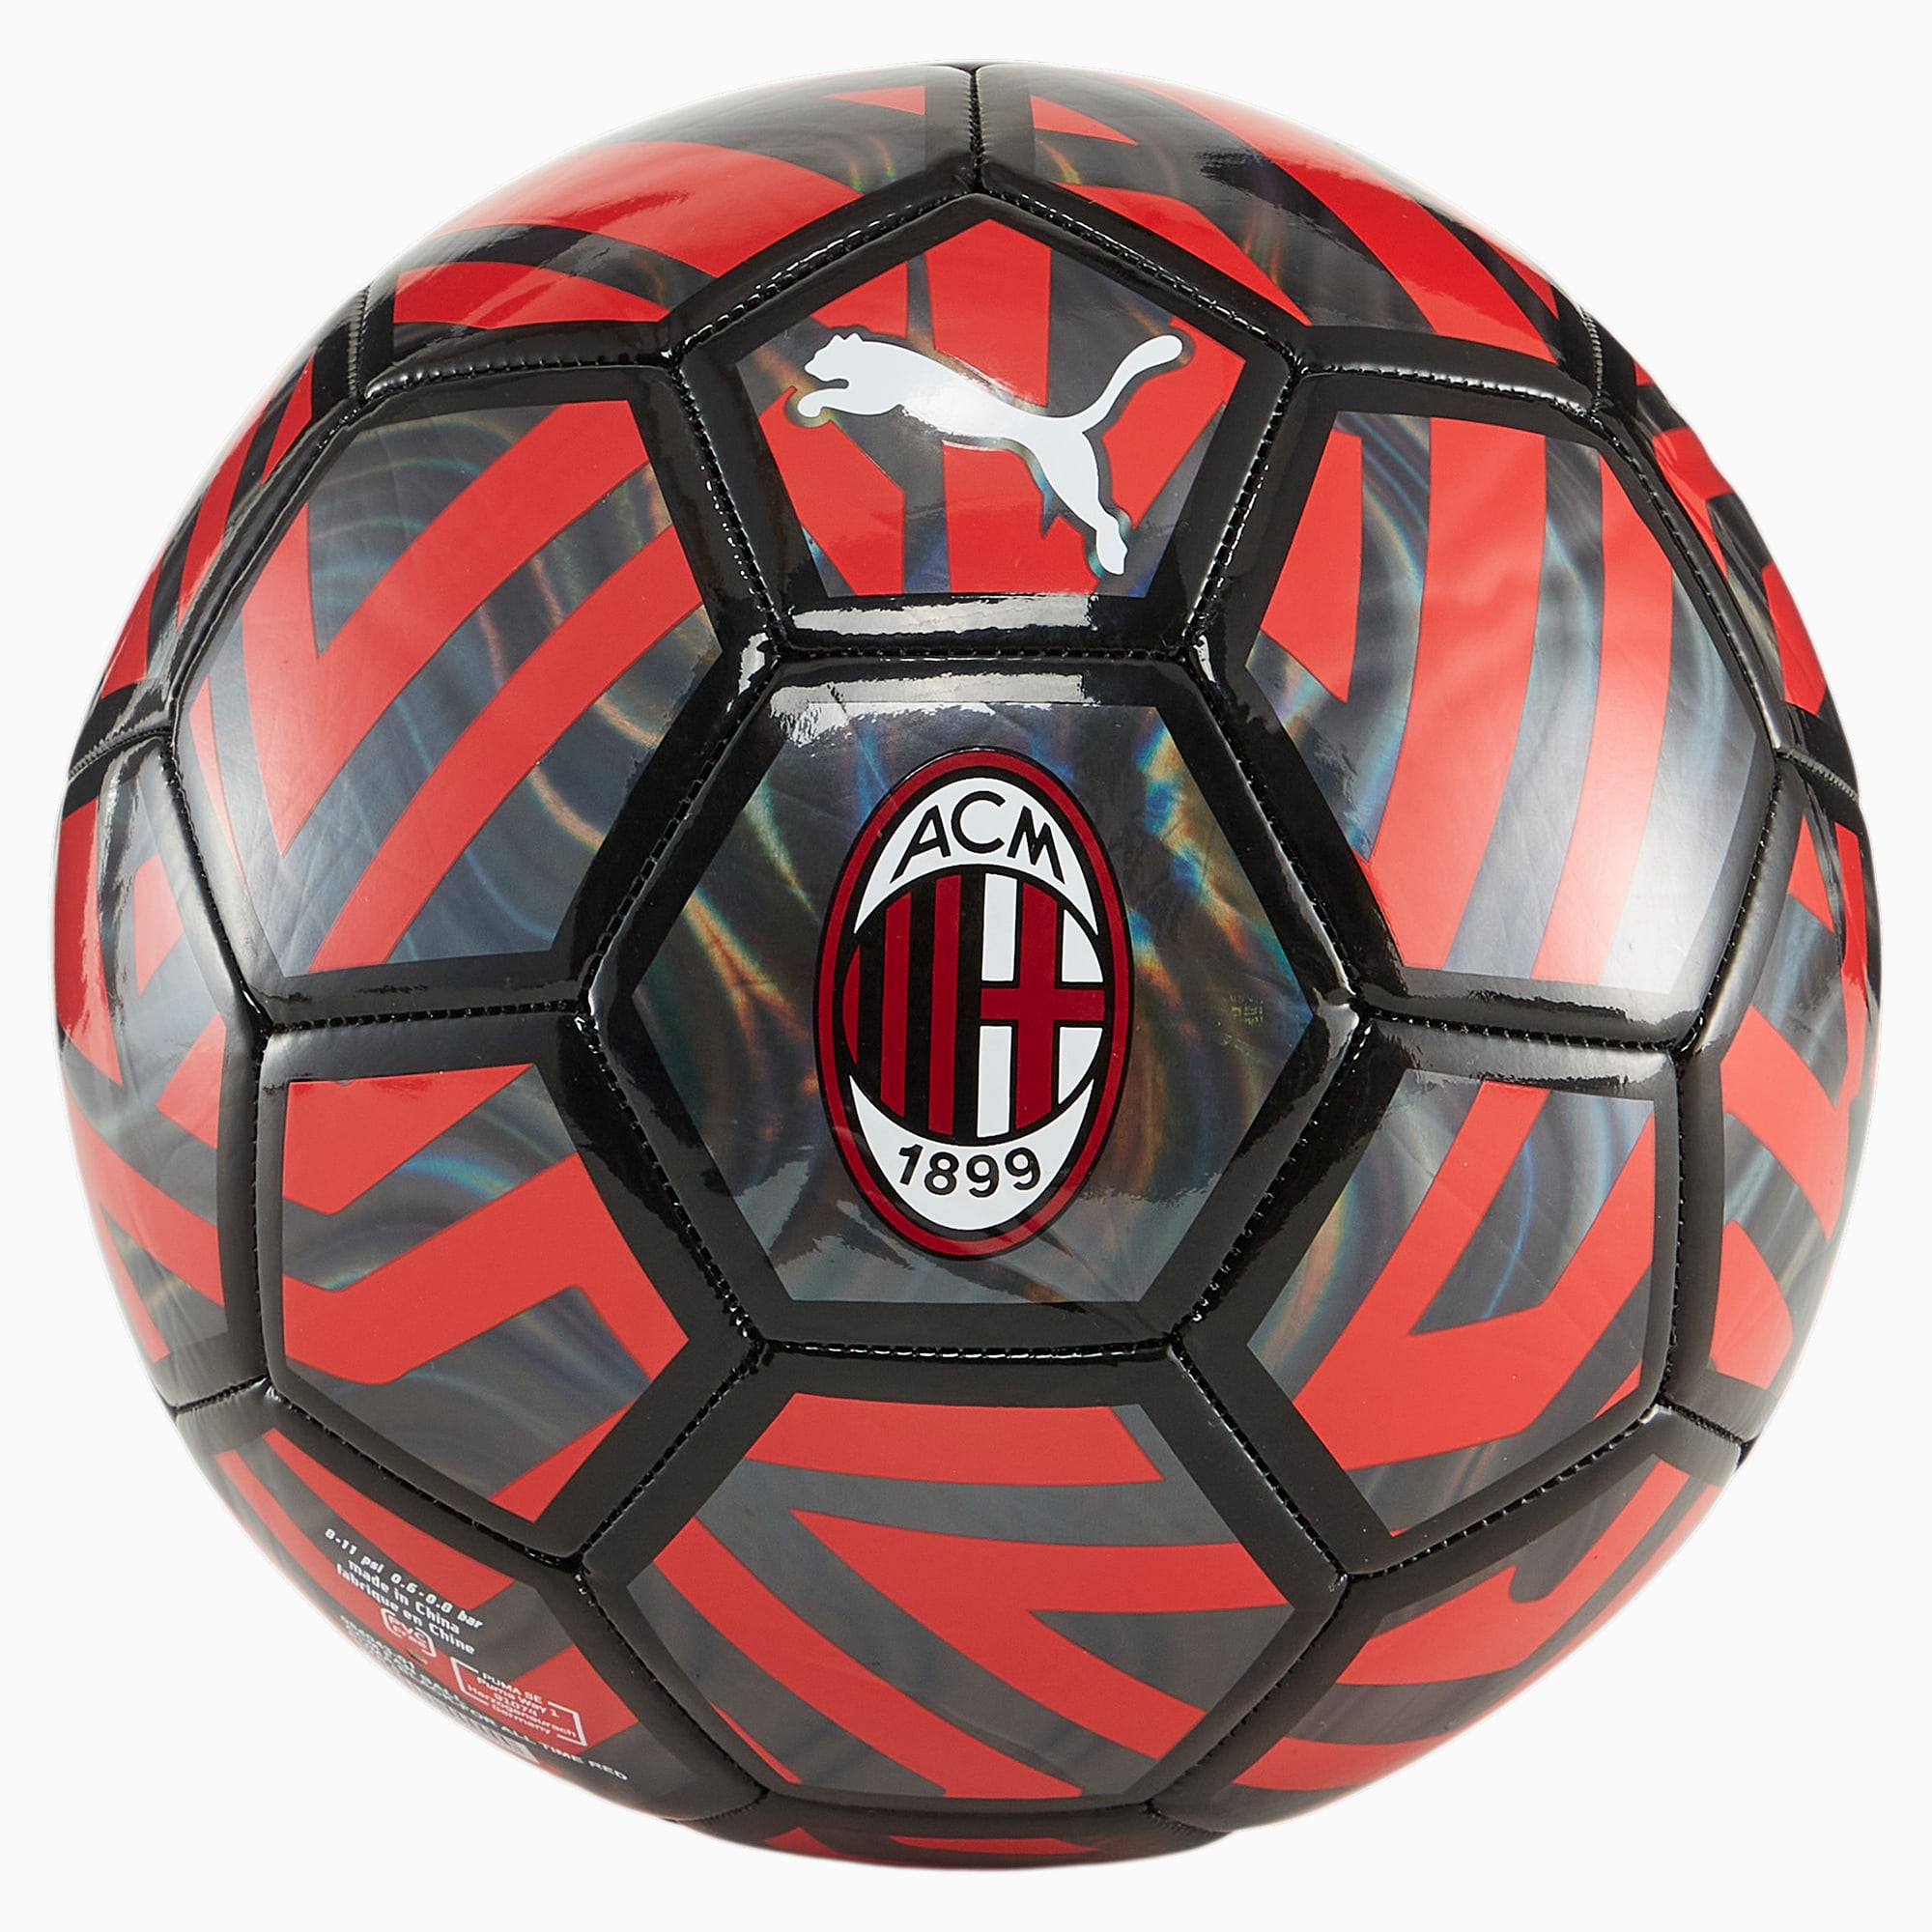 PUMA AC Milan Fan-Fußball, Schwarz/Rot, Größe: 4, Accessoires